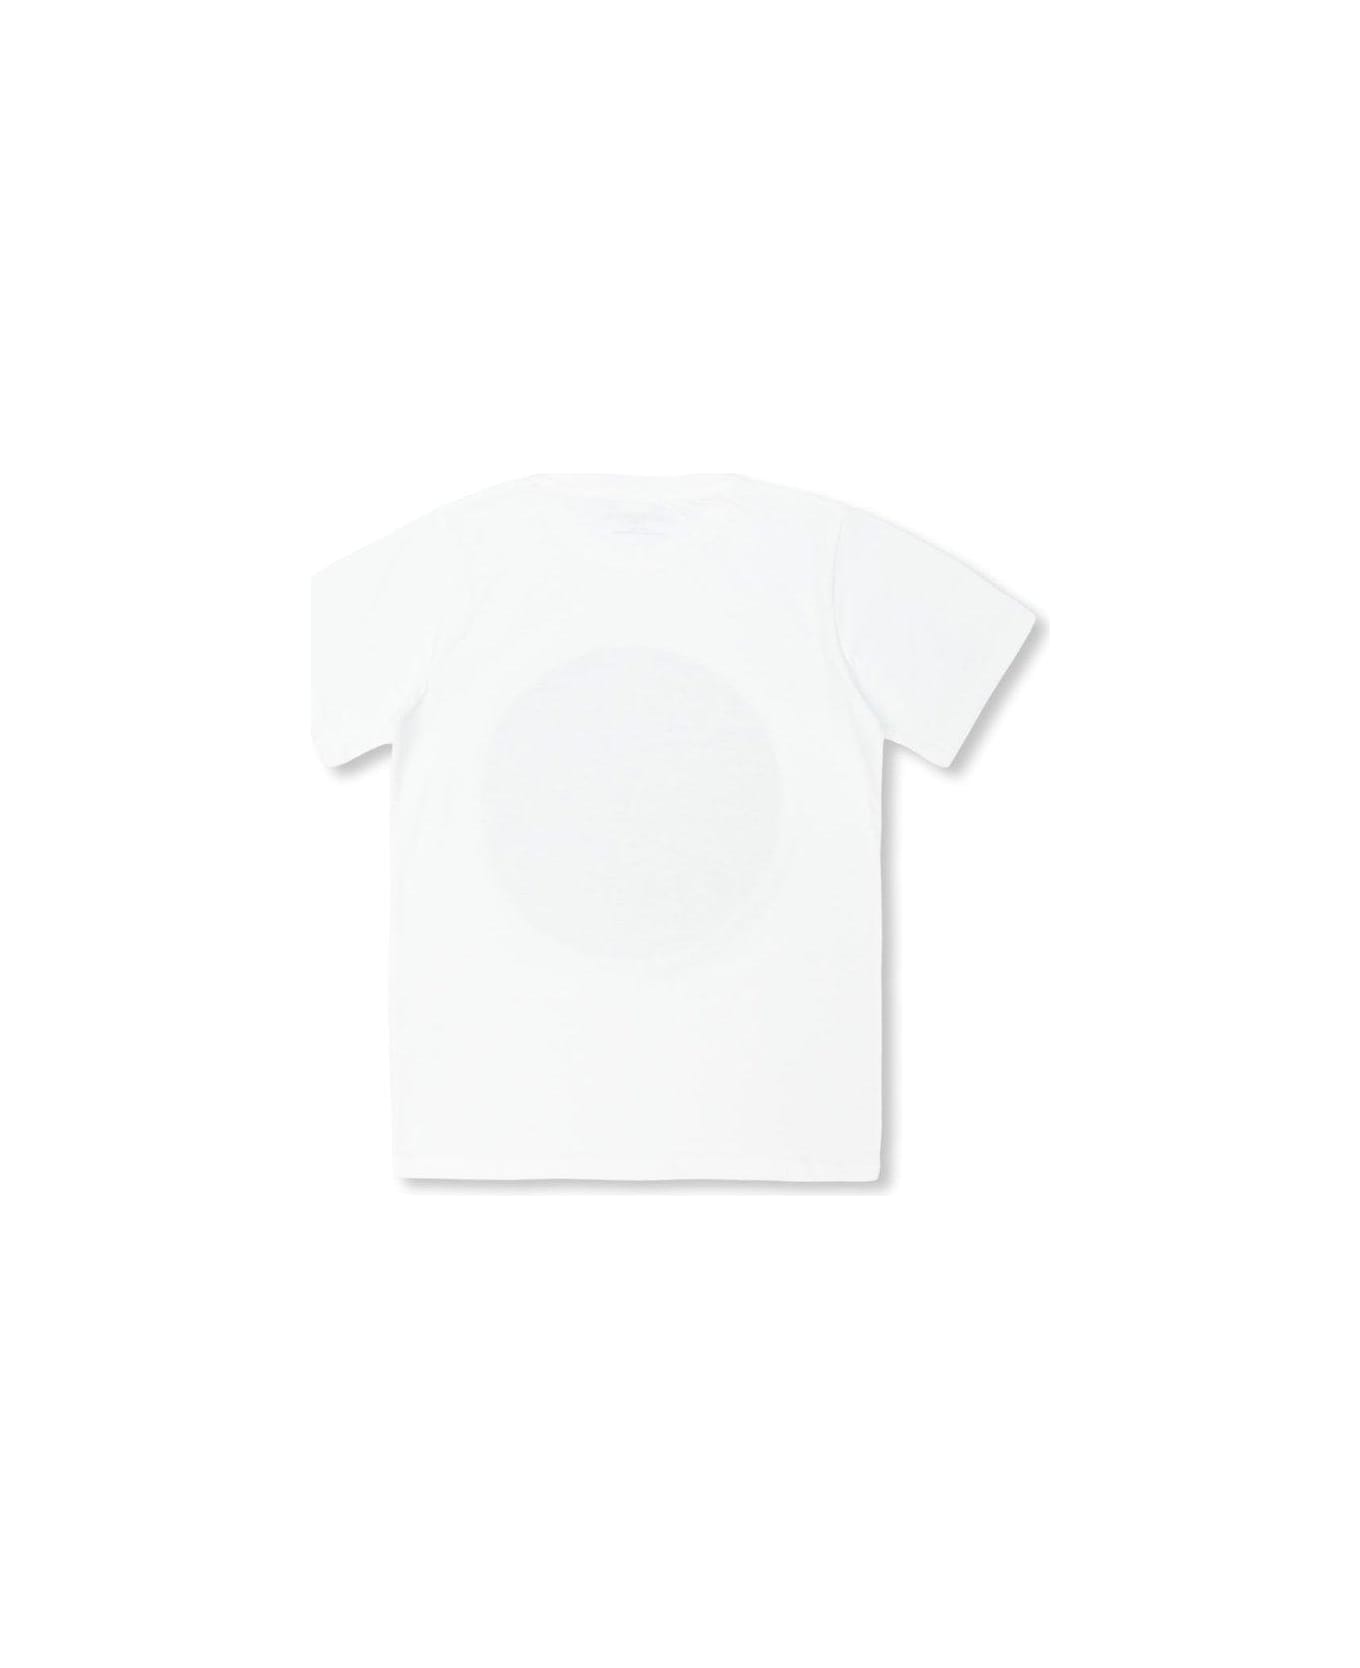 Stella McCartney Kids Circular Logo Disc Crewneck T-shirt - WHITE